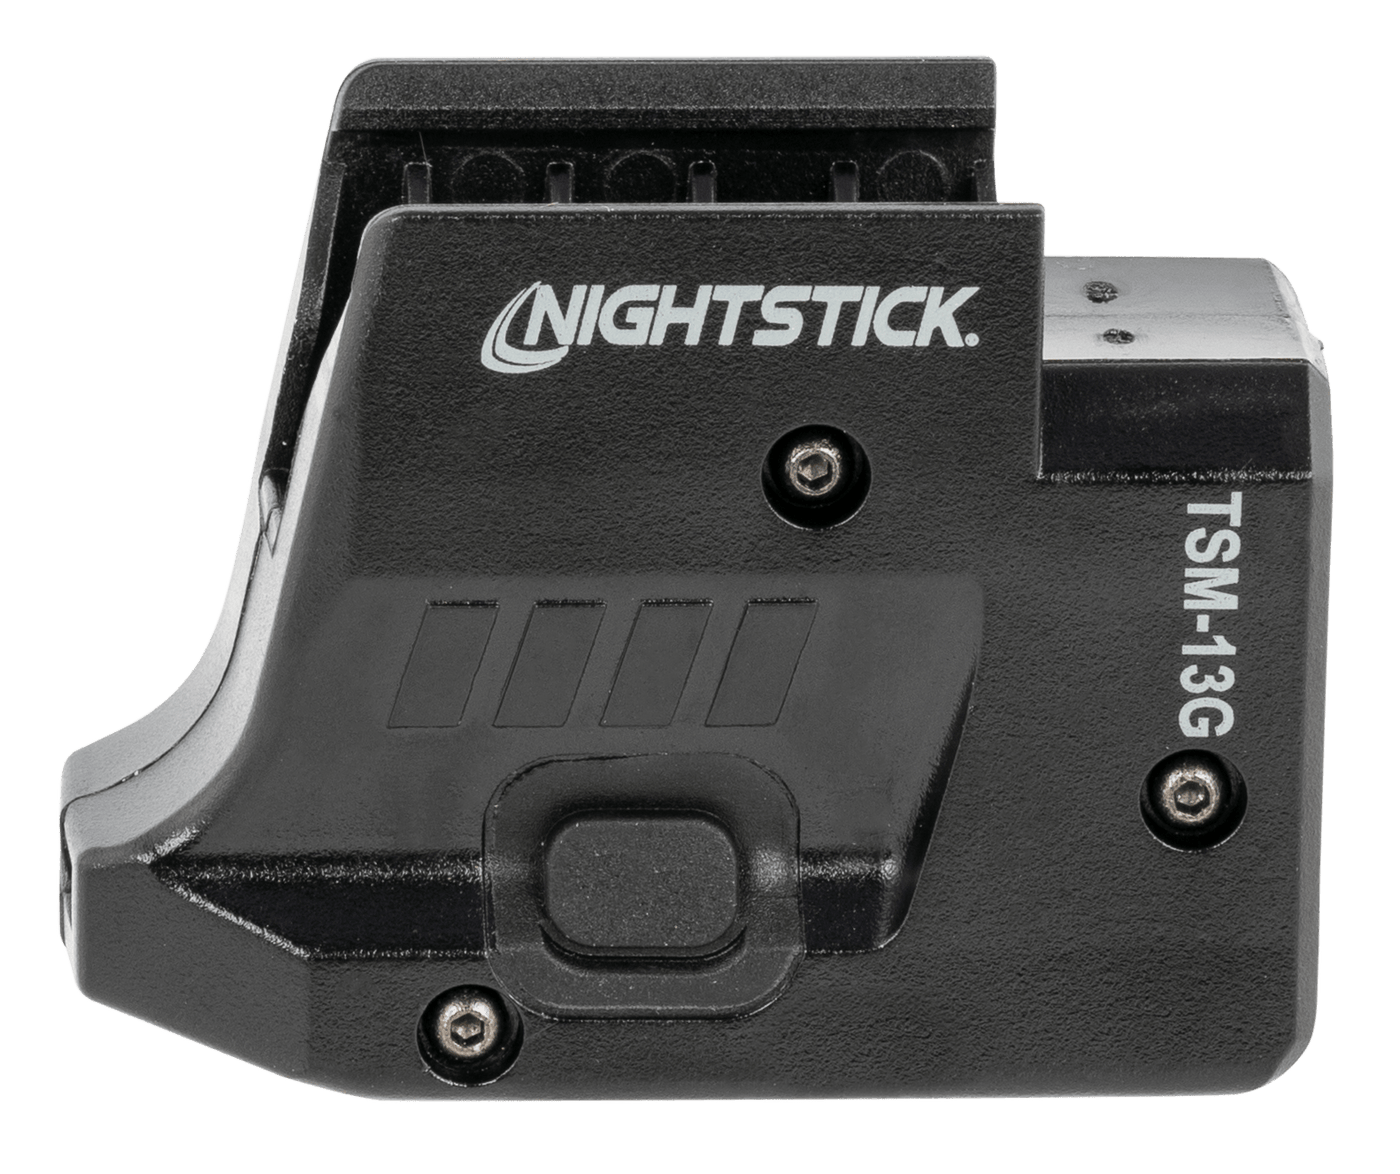 Nightstick Nightstick Pistol Laser Green Laser Fits Sig Sauer 365 Accessories